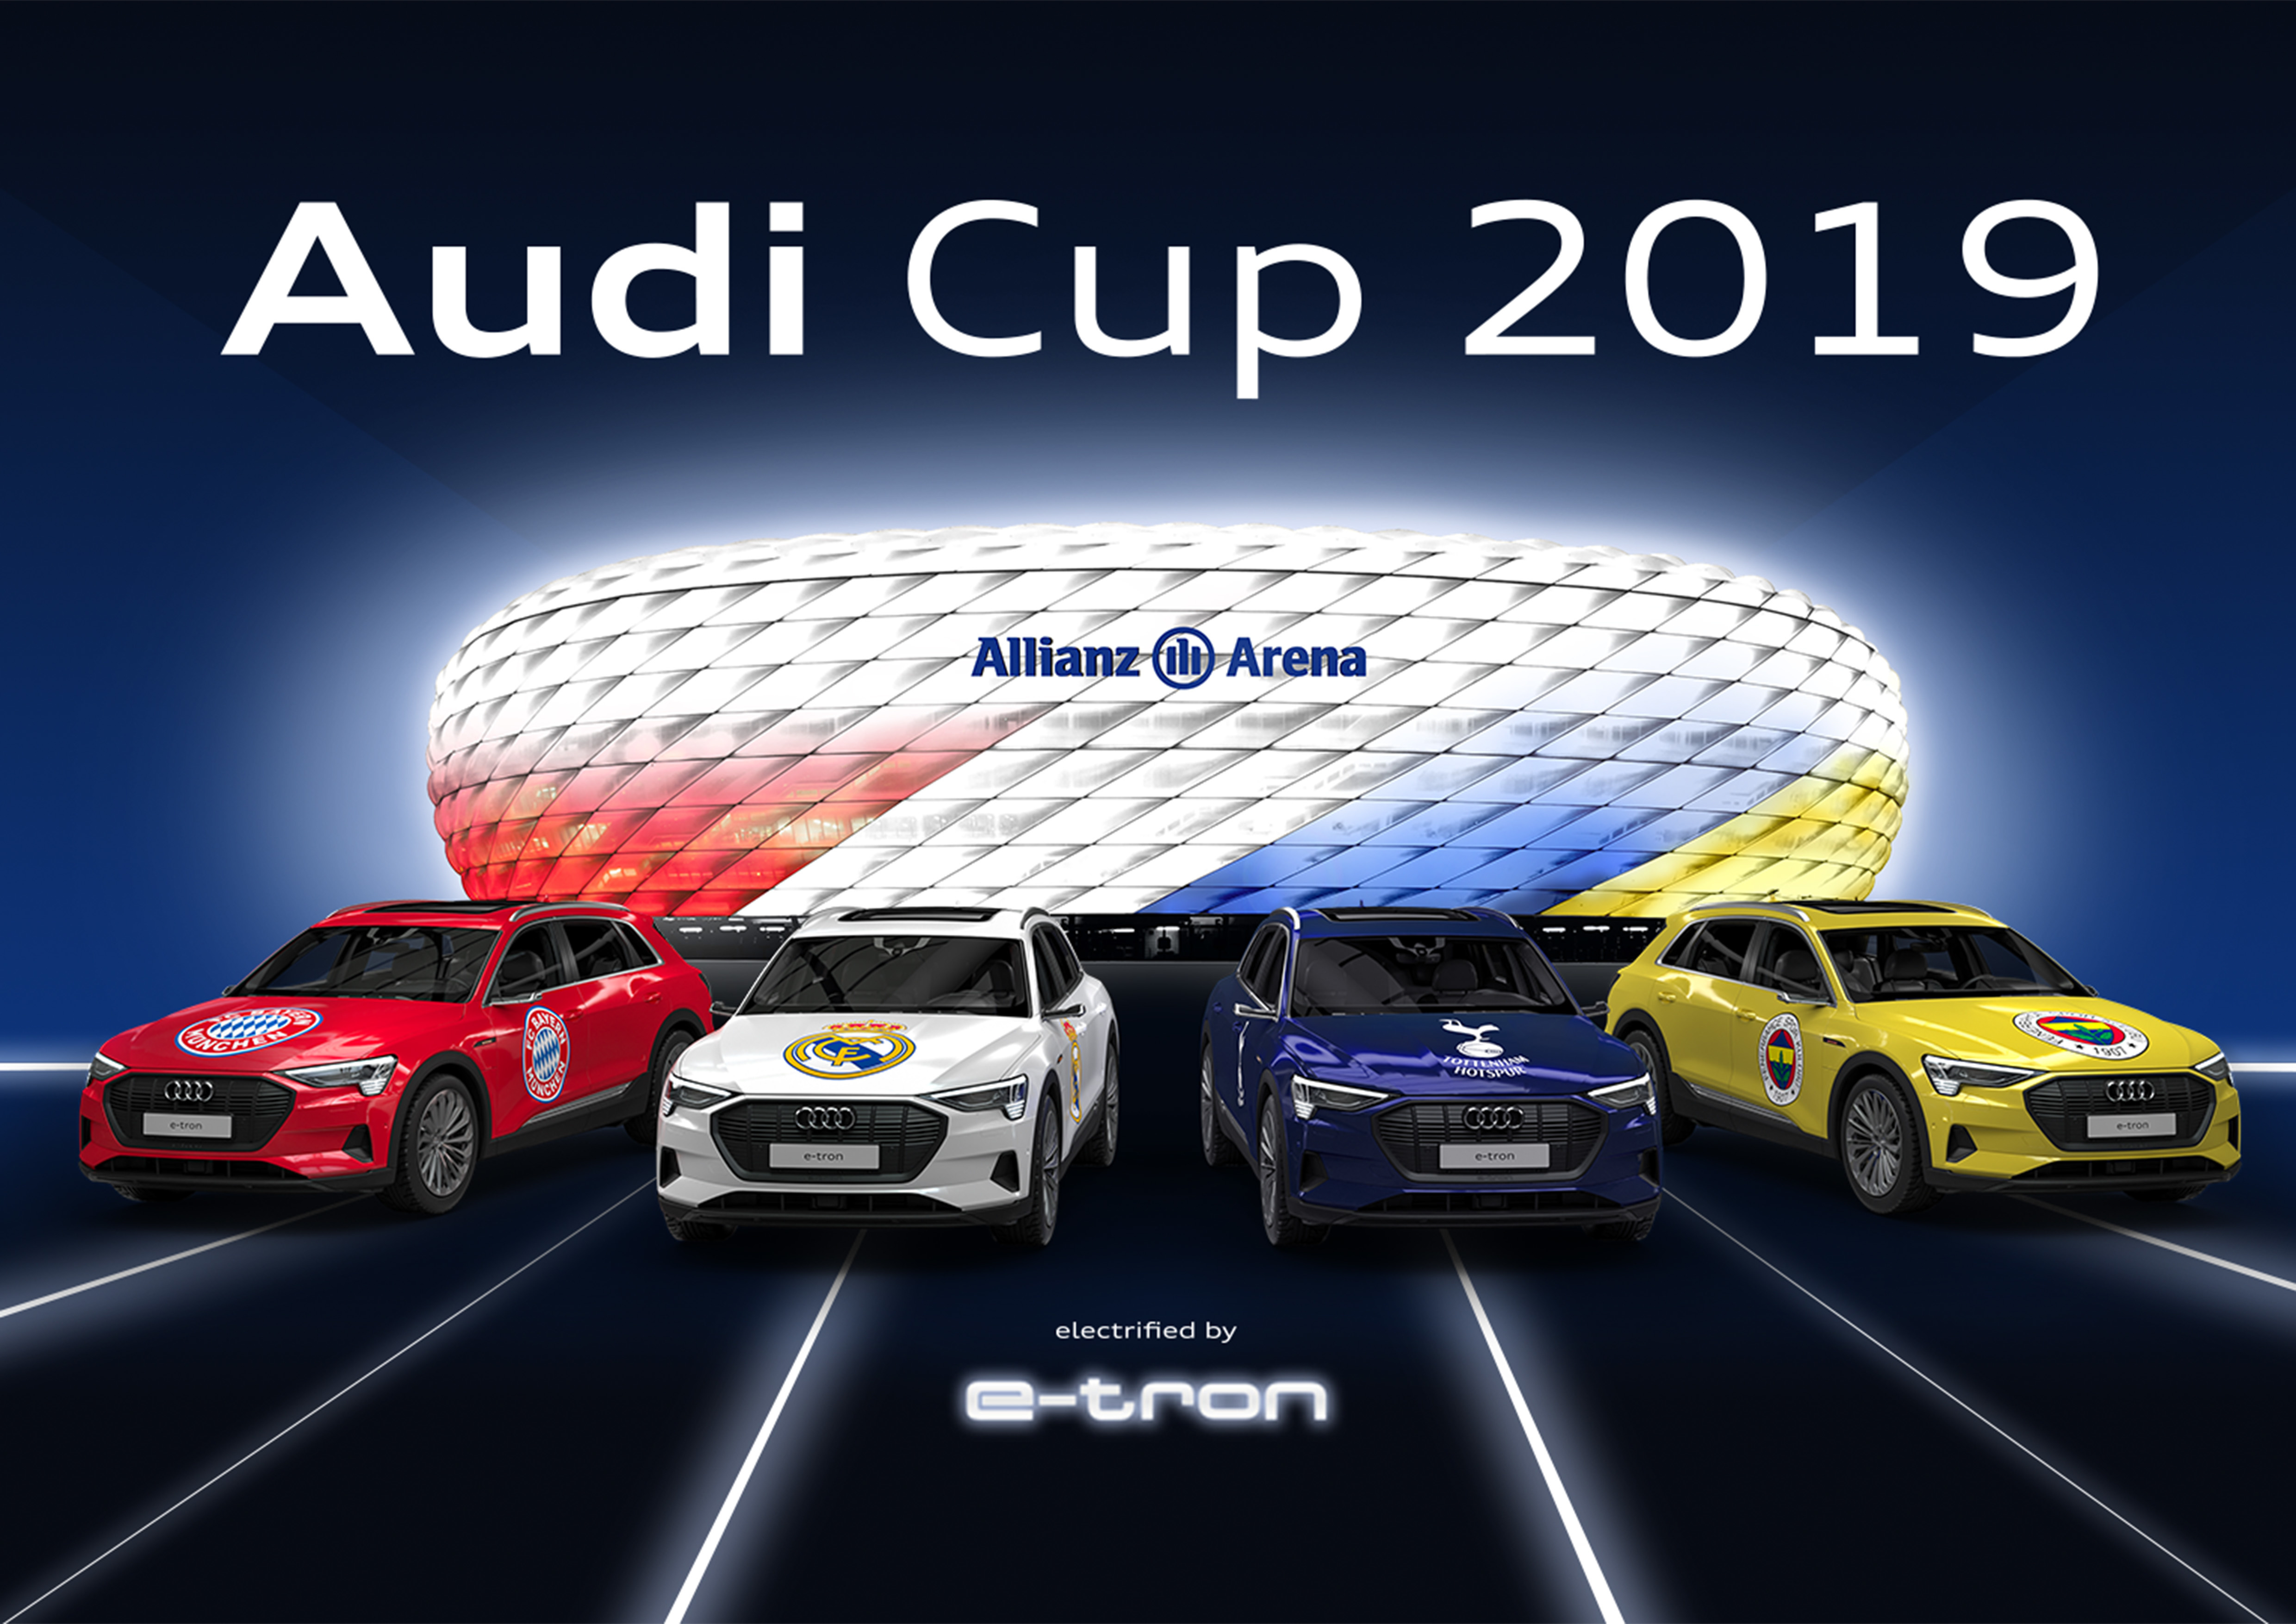 El Real Madrid C F Entre Los Cuatro Clubes De Nivel Mundial Que Disputaran La Audi Cup 2019 Audi Mediaservices Espana